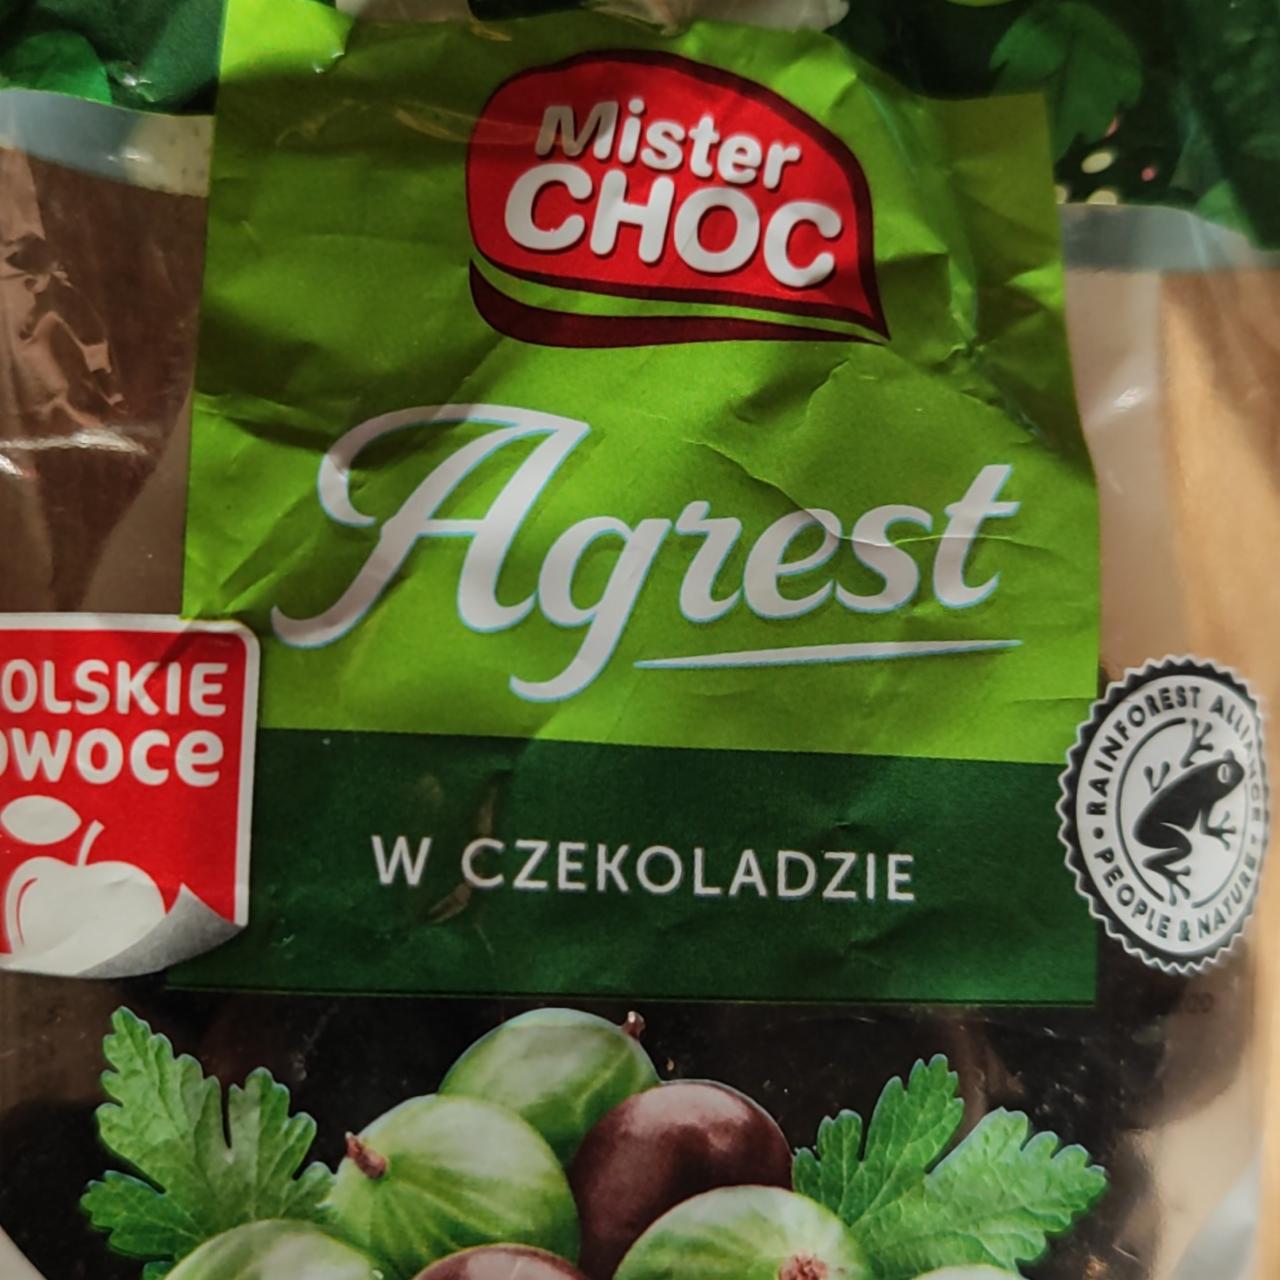 Zdjęcia - Agrest w czekoladzie Mister Choc